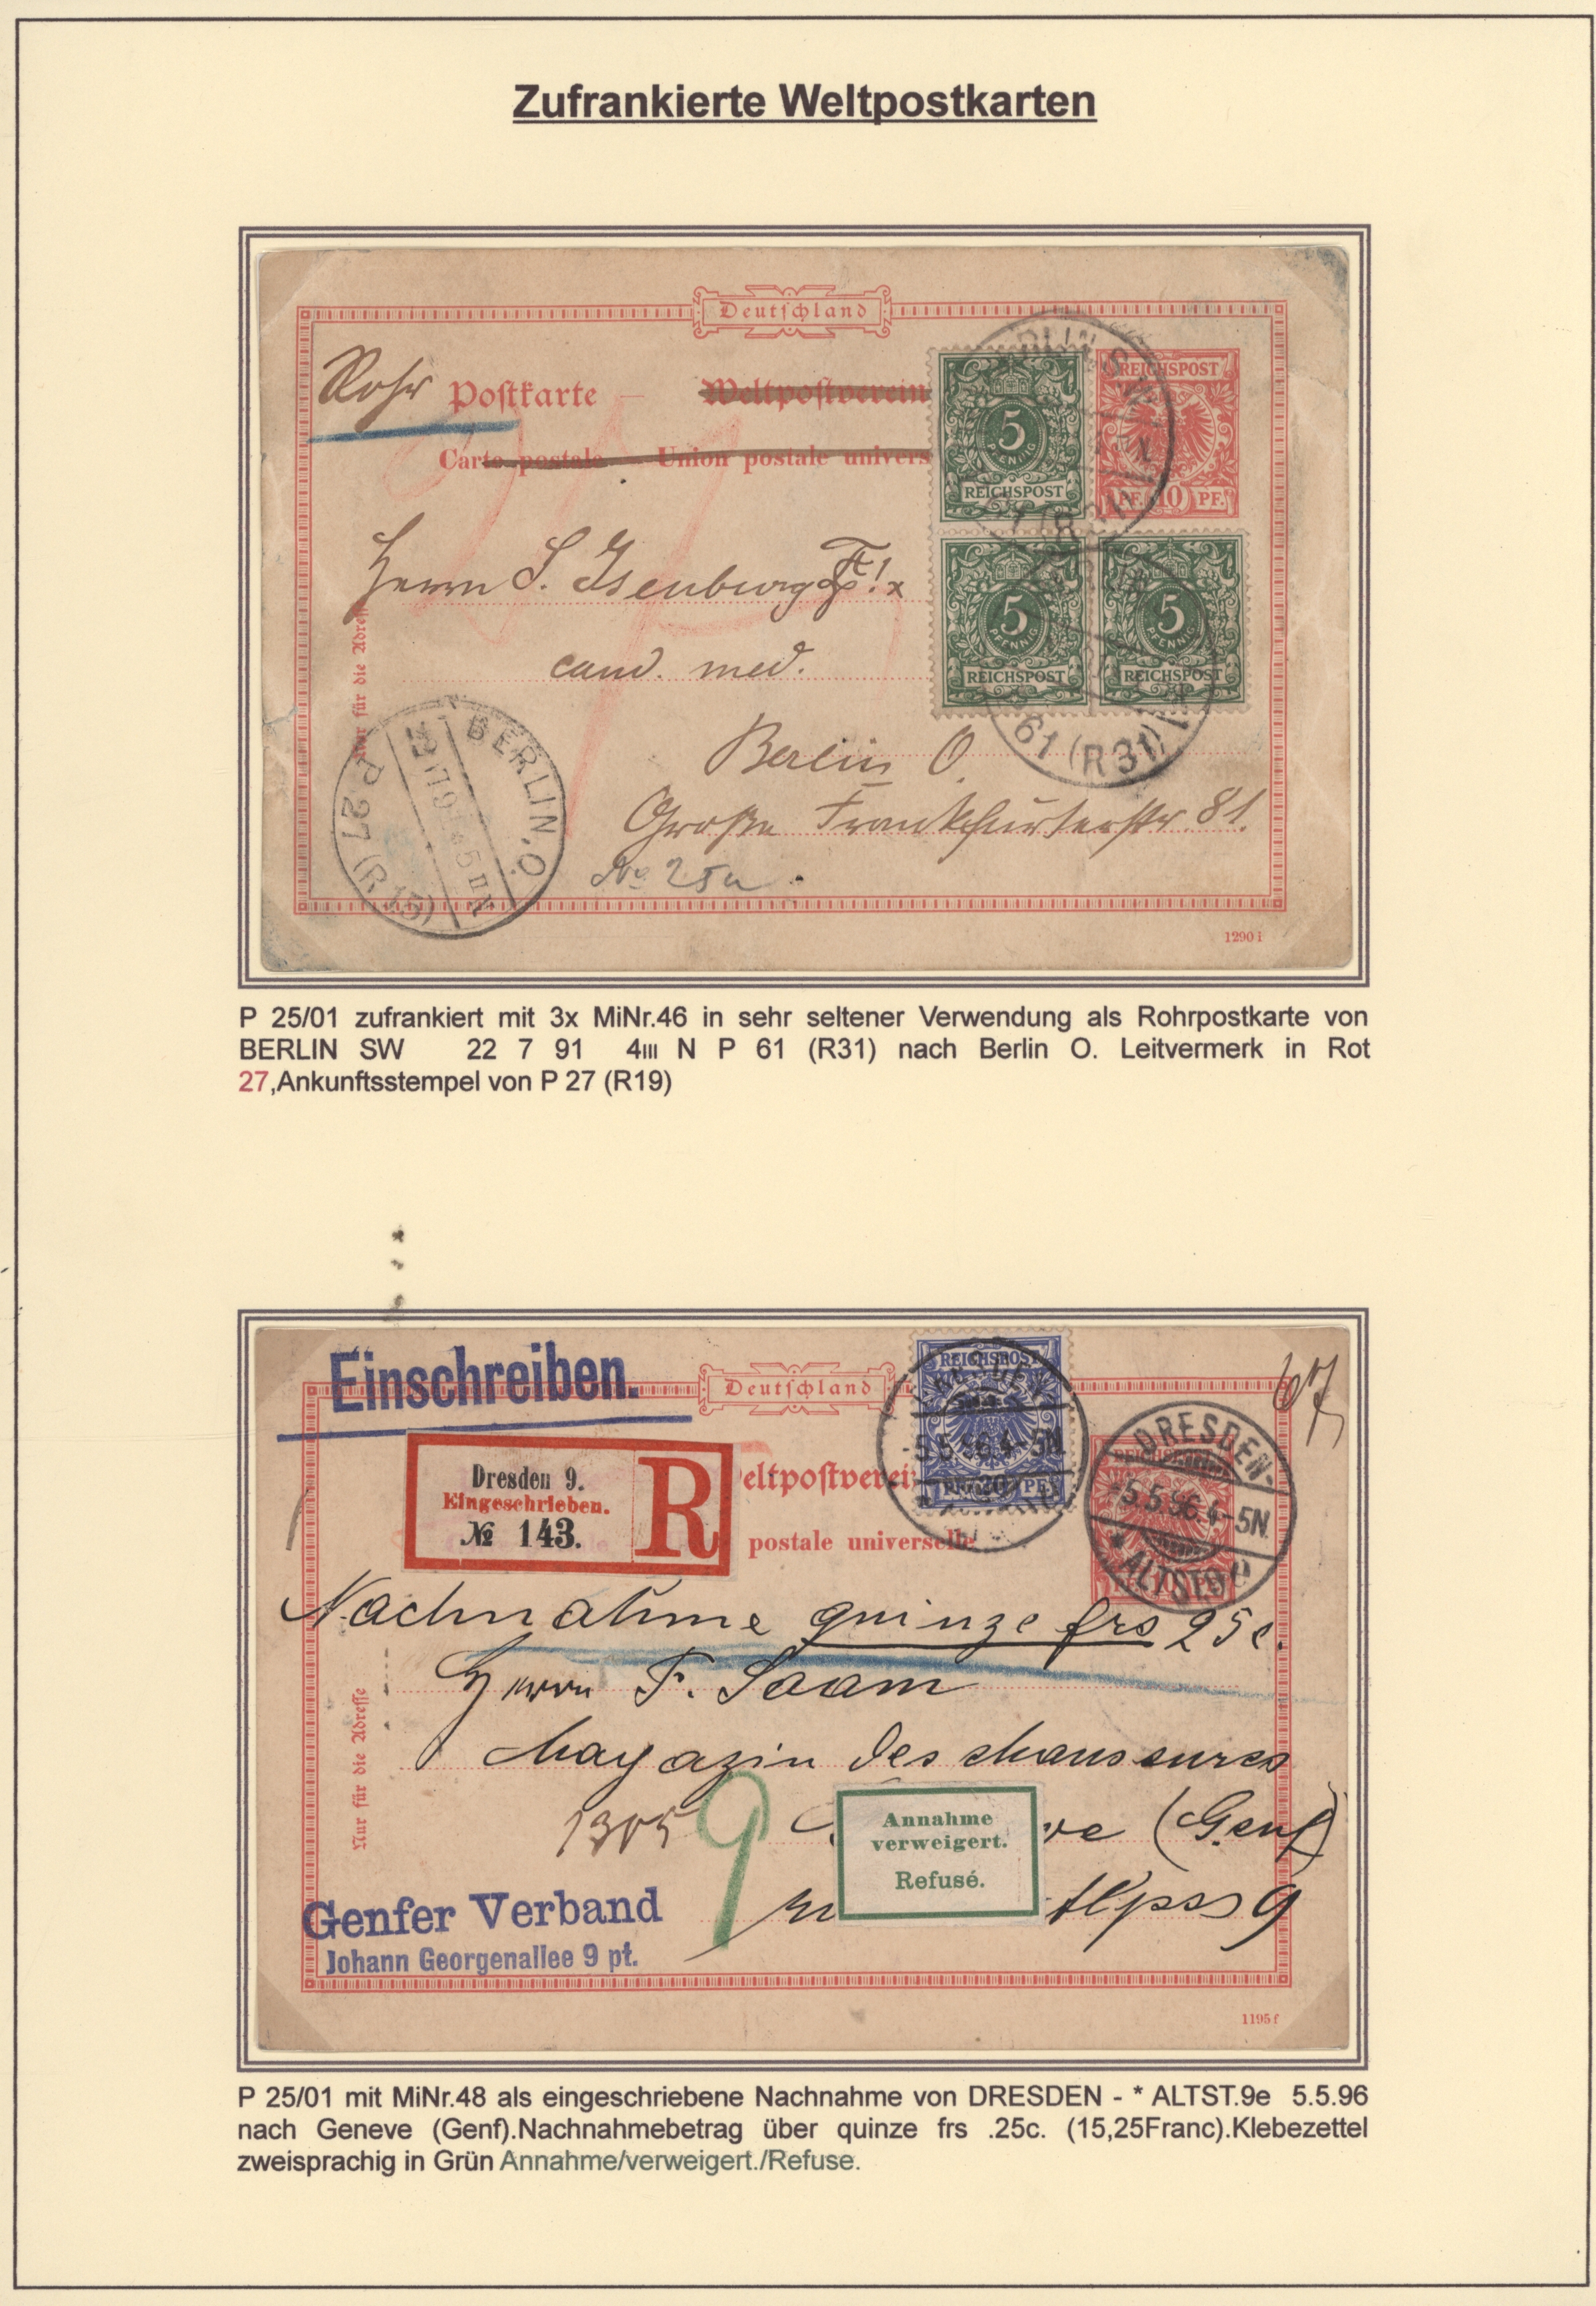 Lot 11080 - Deutsches Reich - Krone / Adler  -  Auktionshaus Christoph Gärtner GmbH & Co. KG 54th AUCTION - Day 5